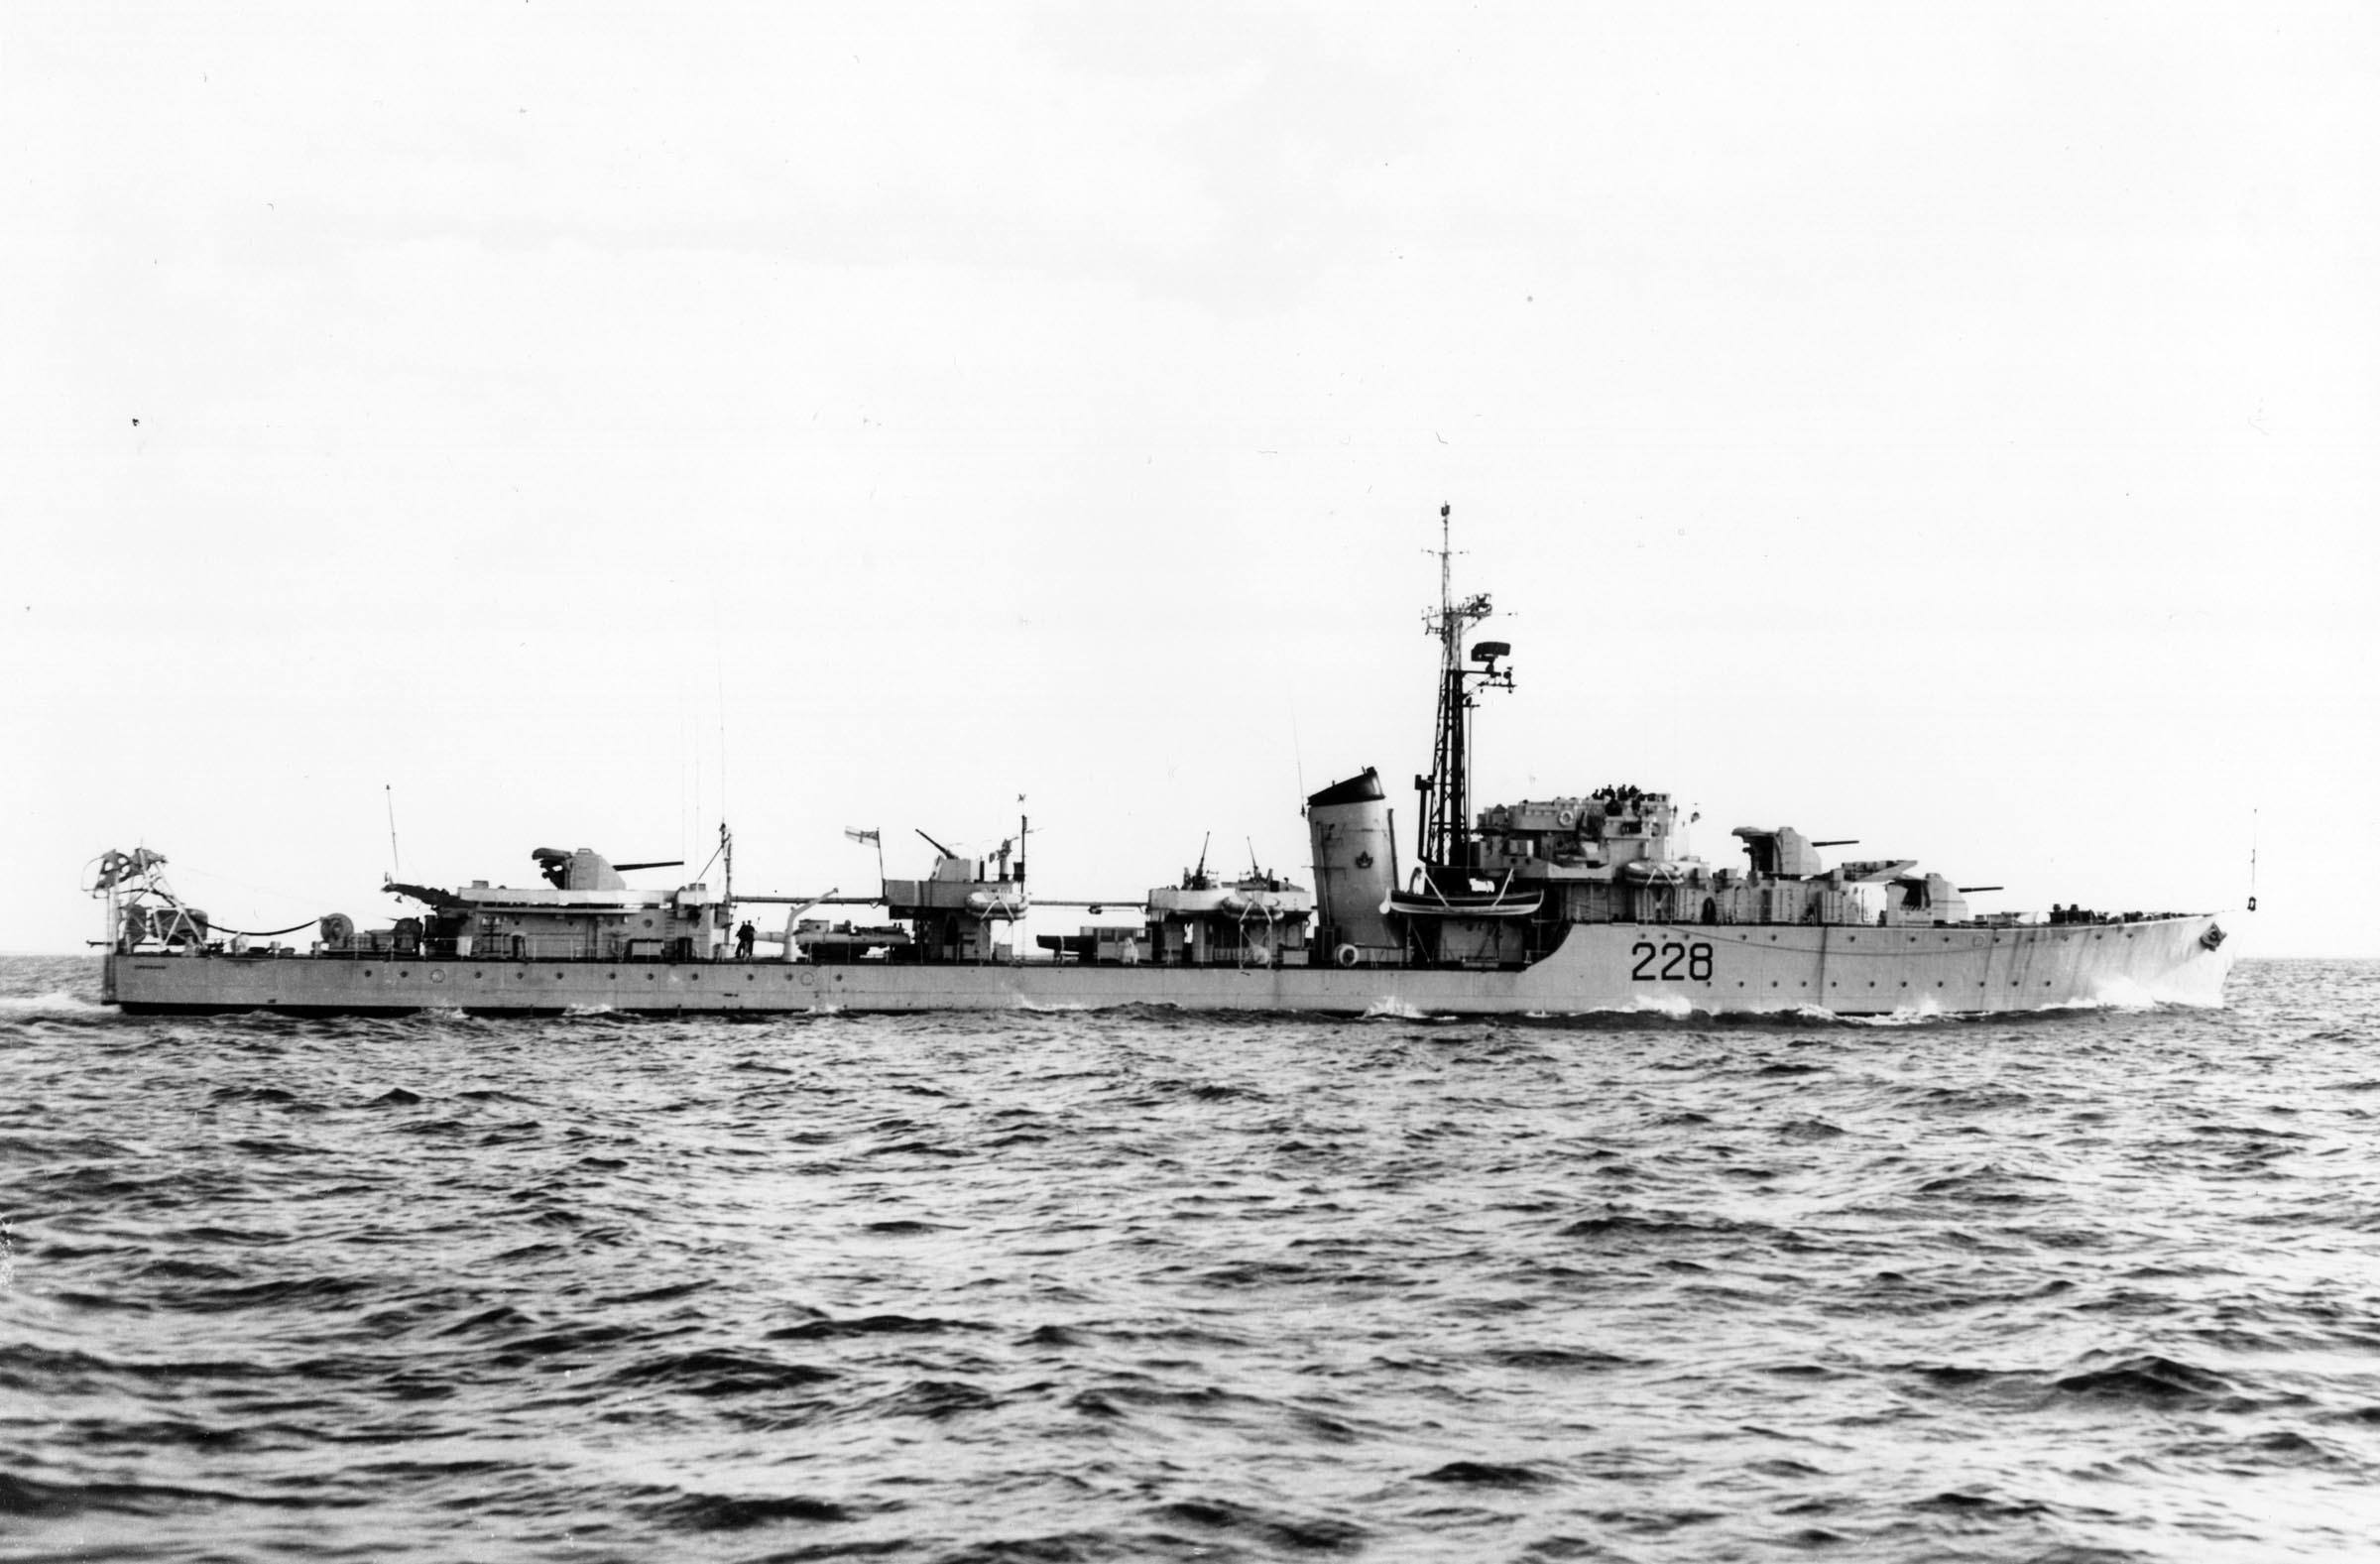 HMCS CRUSADER